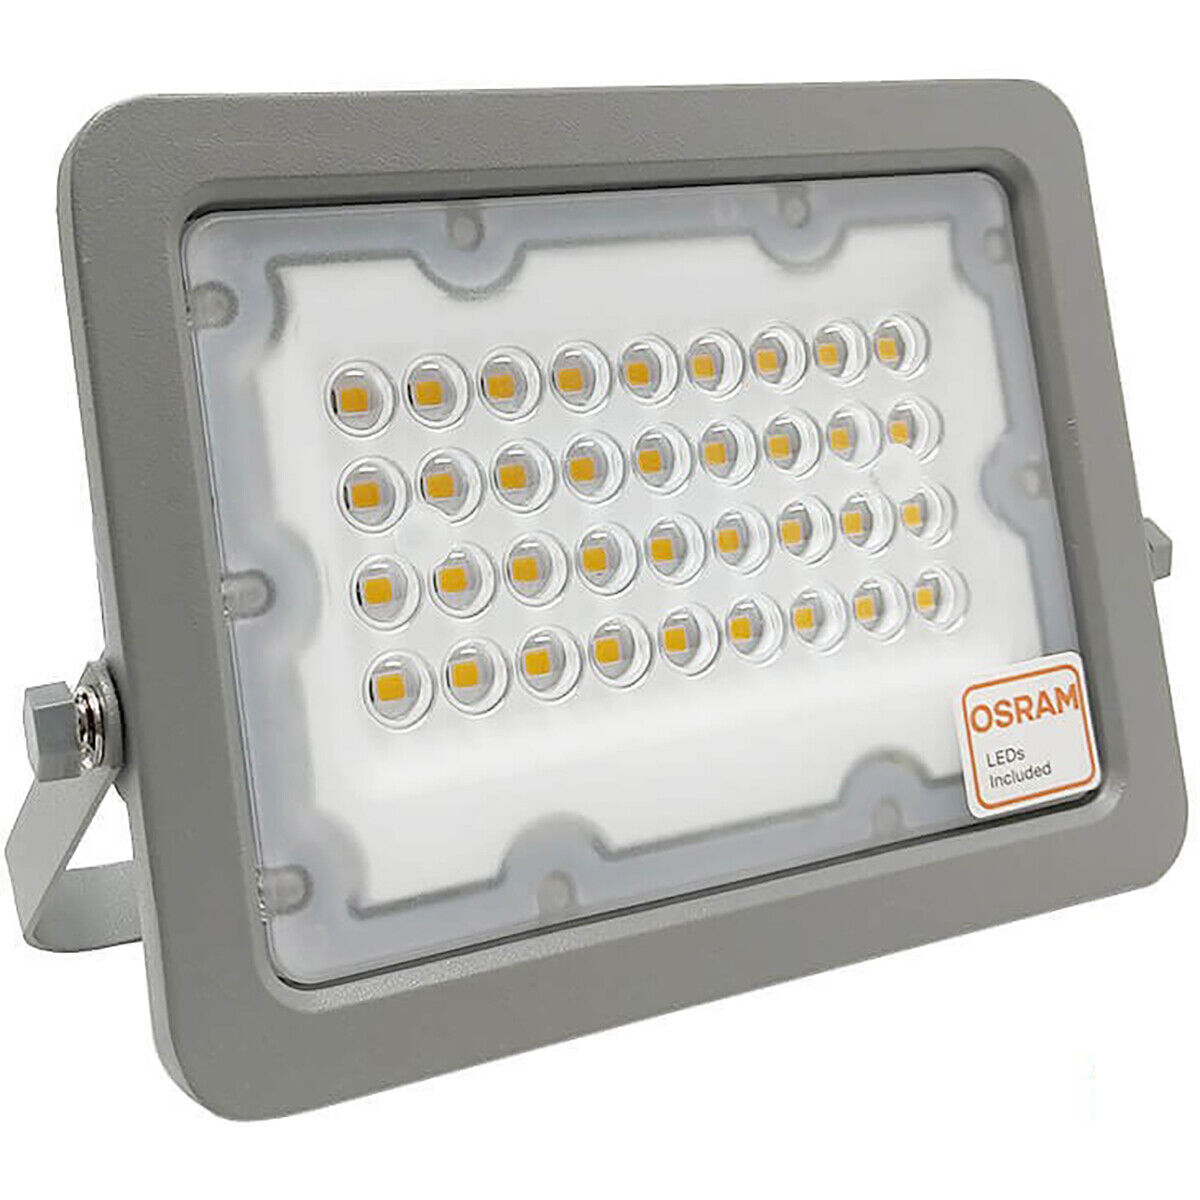 BES LED LED Bouwlamp - Facto Dary - 30 Watt - LED Schijnwerper - Helder/Koud Wit 6000K - Waterdicht IP65 - 120LM/W - Flikkervrij - OSRAM LEDs